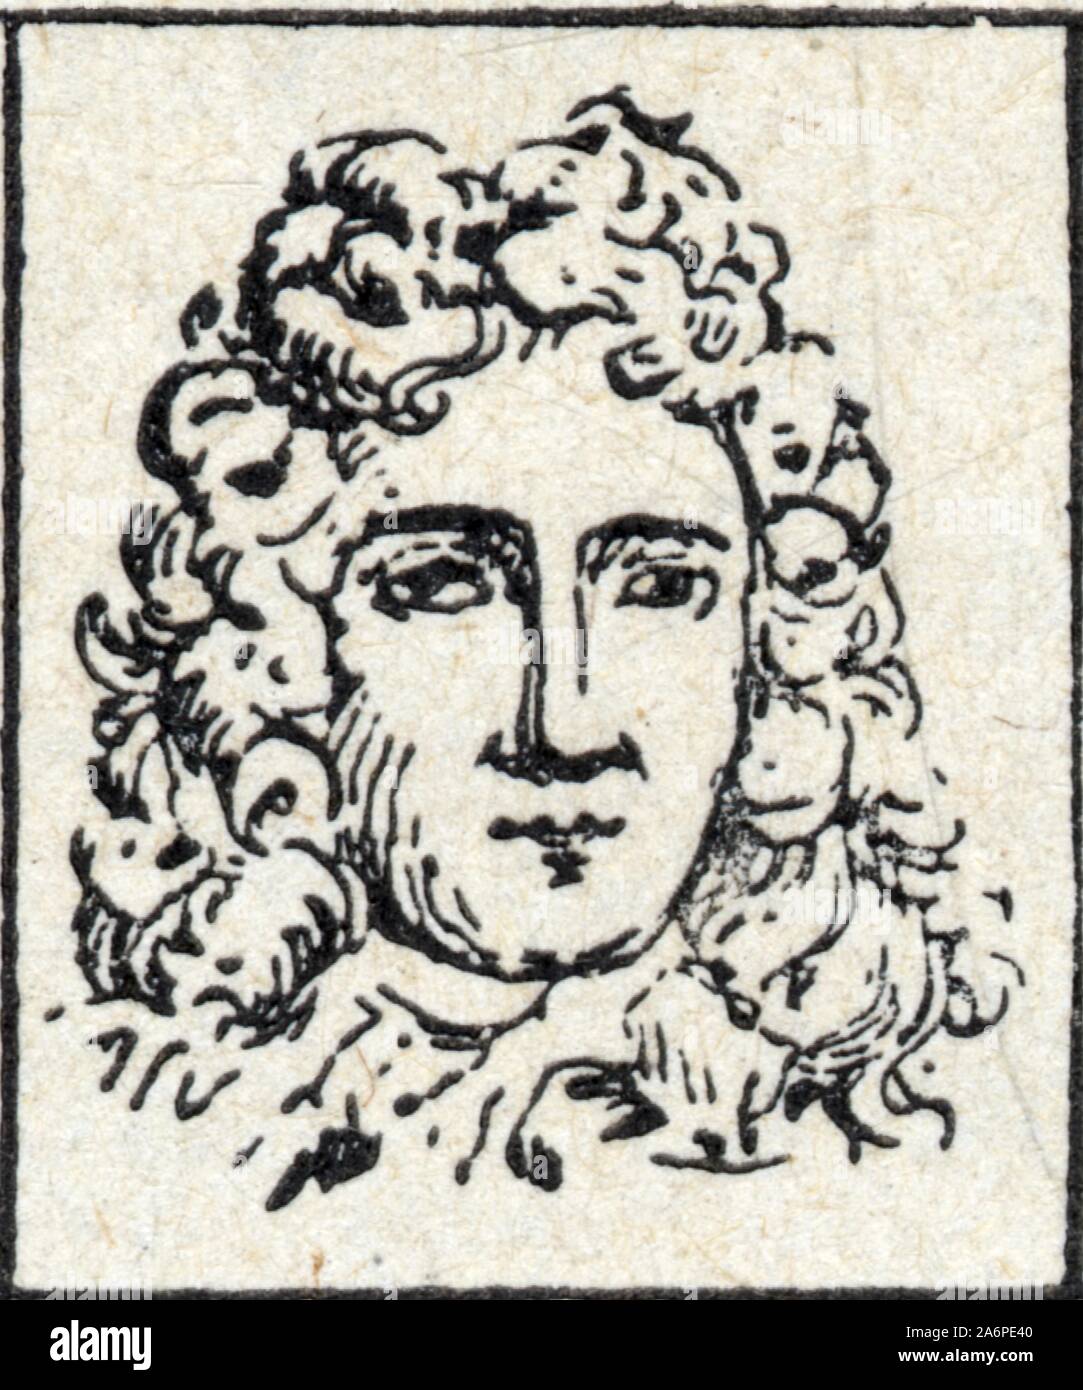 Nicolas de Catinat de La Fauconnerie, seigneur de Saint-Gratien, né à Paris le 1ᵉʳ septembre 1637 et mort à Saint-Gratien le 22 février 1712, Stock Photo